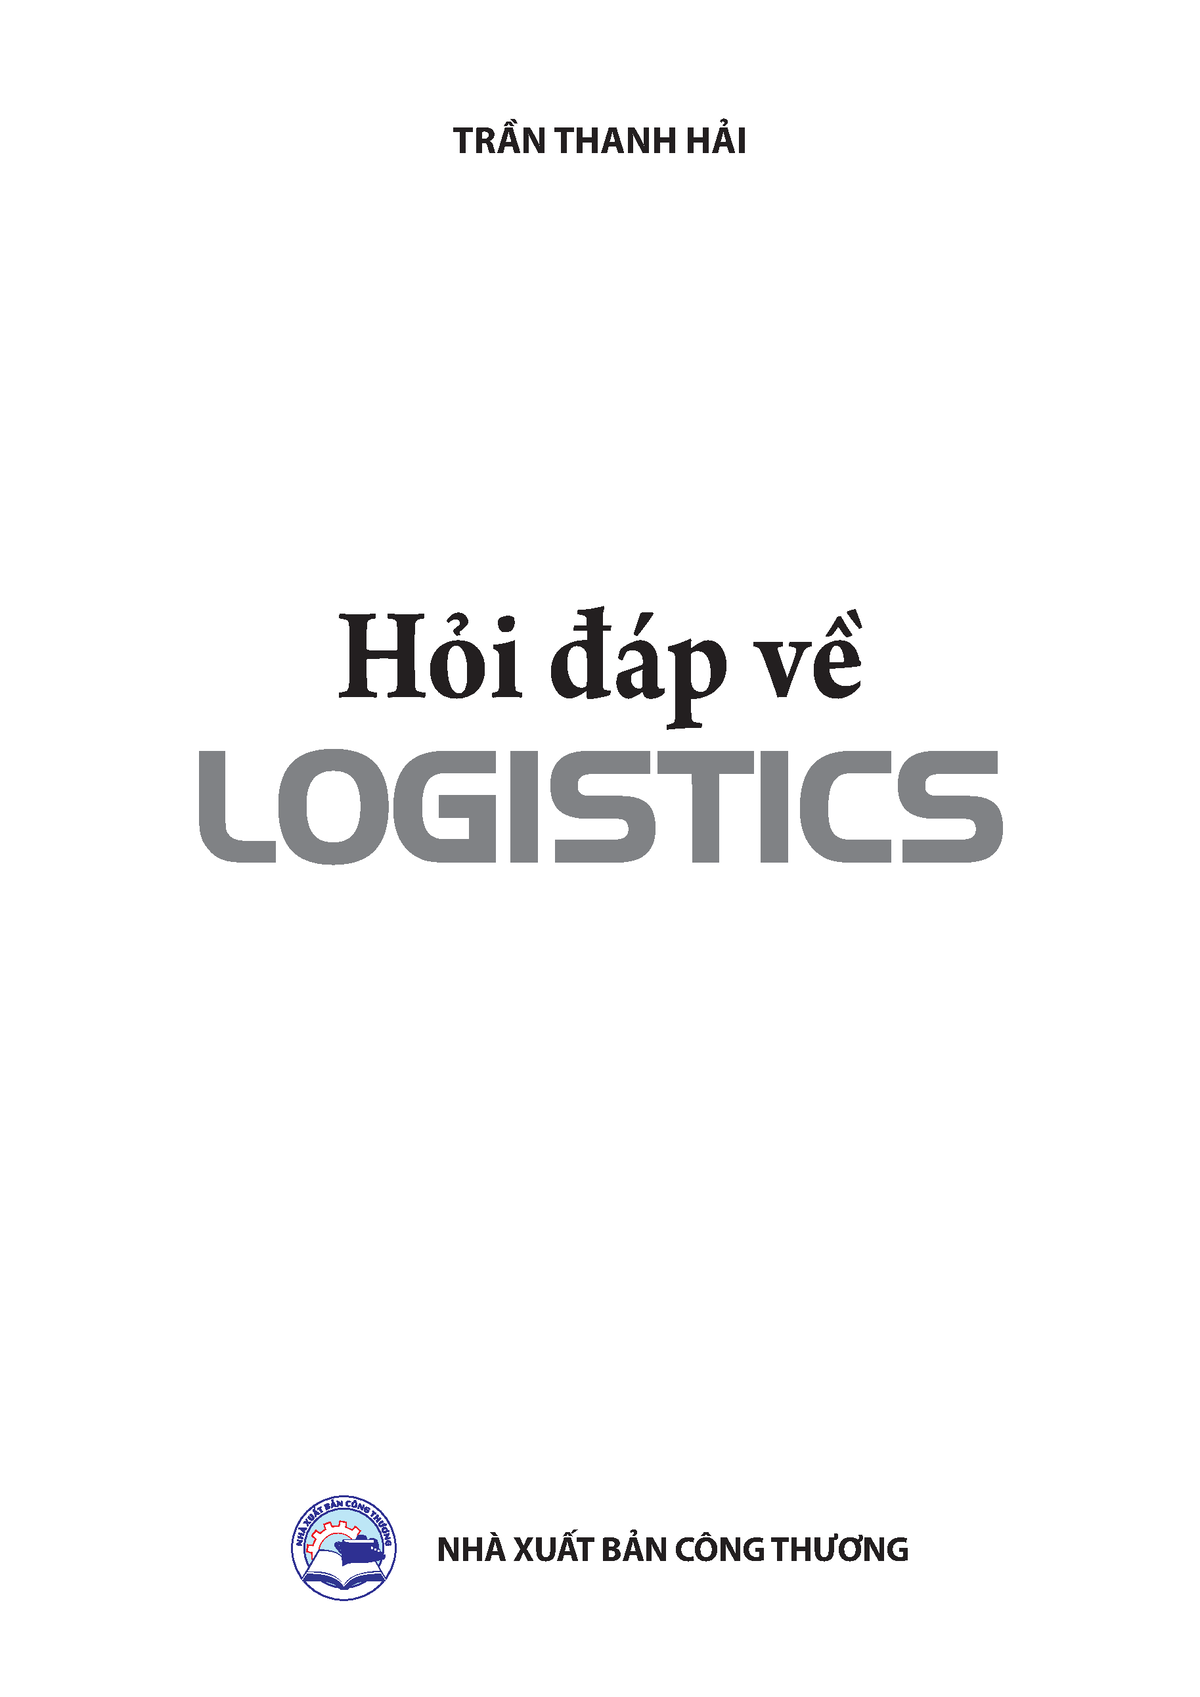 Kiến thức cơ bản về Logistics và quản lý chuỗi cung ứng - TRẦN THANH HẢI NHÀ XUẤT BẢN CÔNG THƯƠNG - Studocu